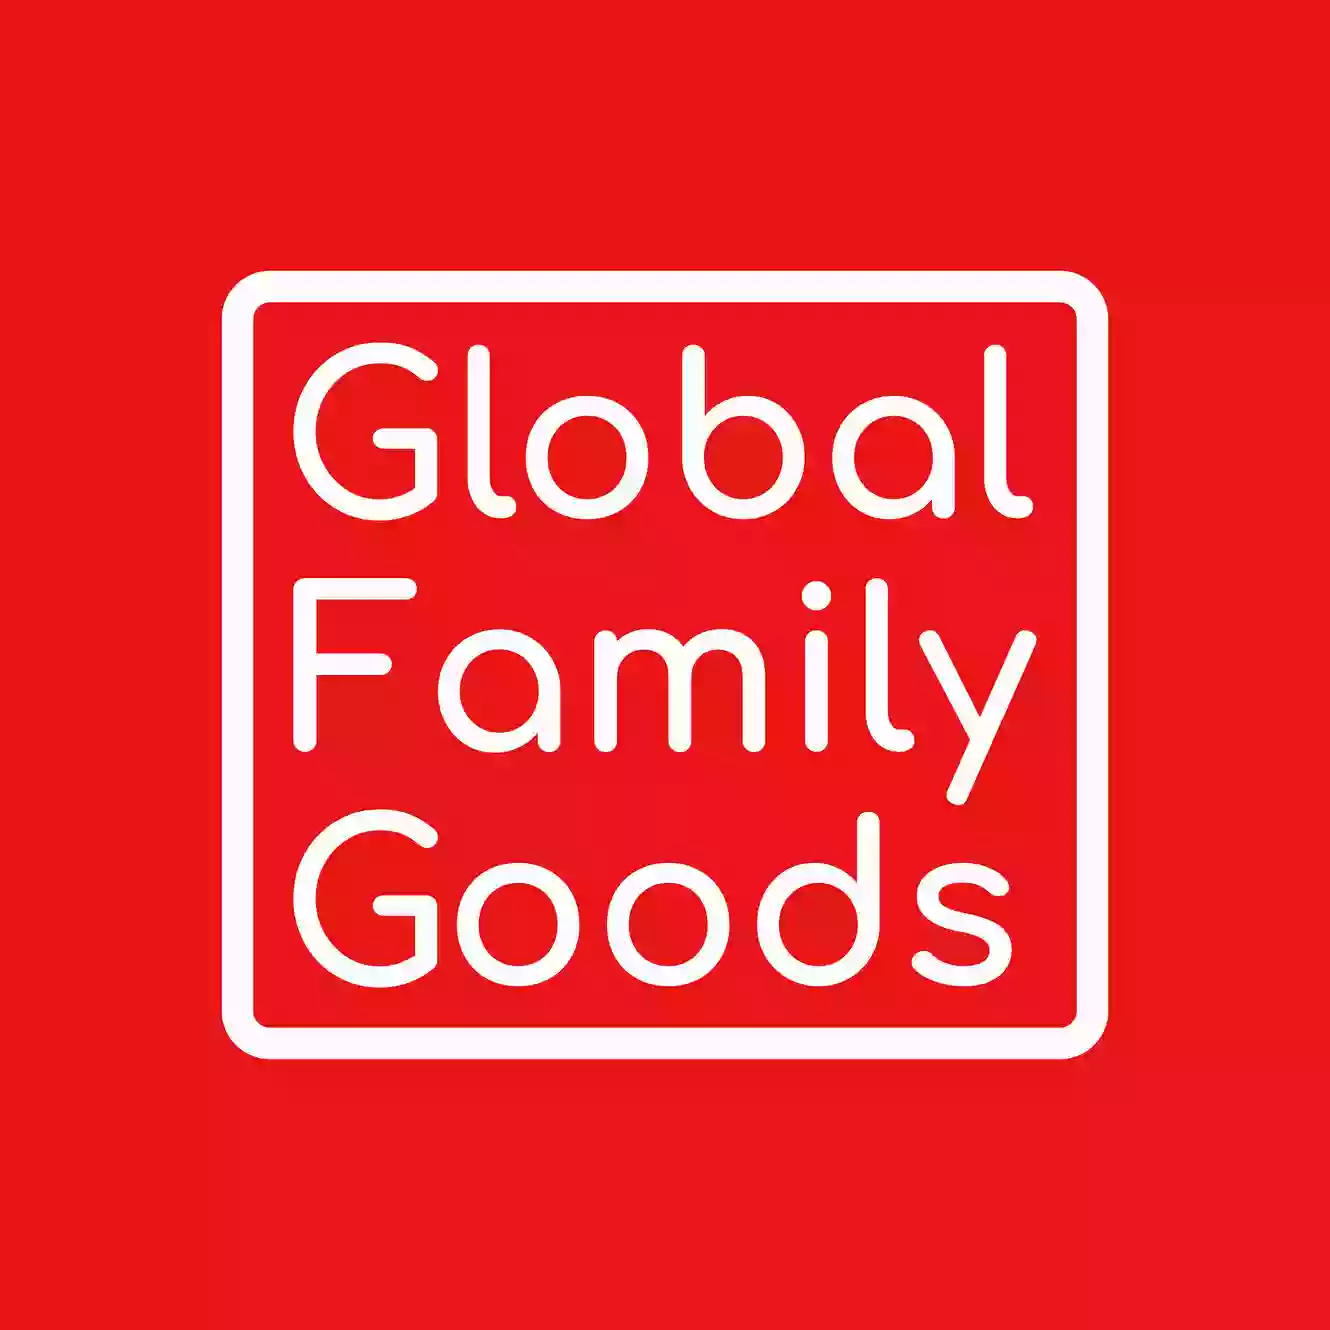 Global Family Goods